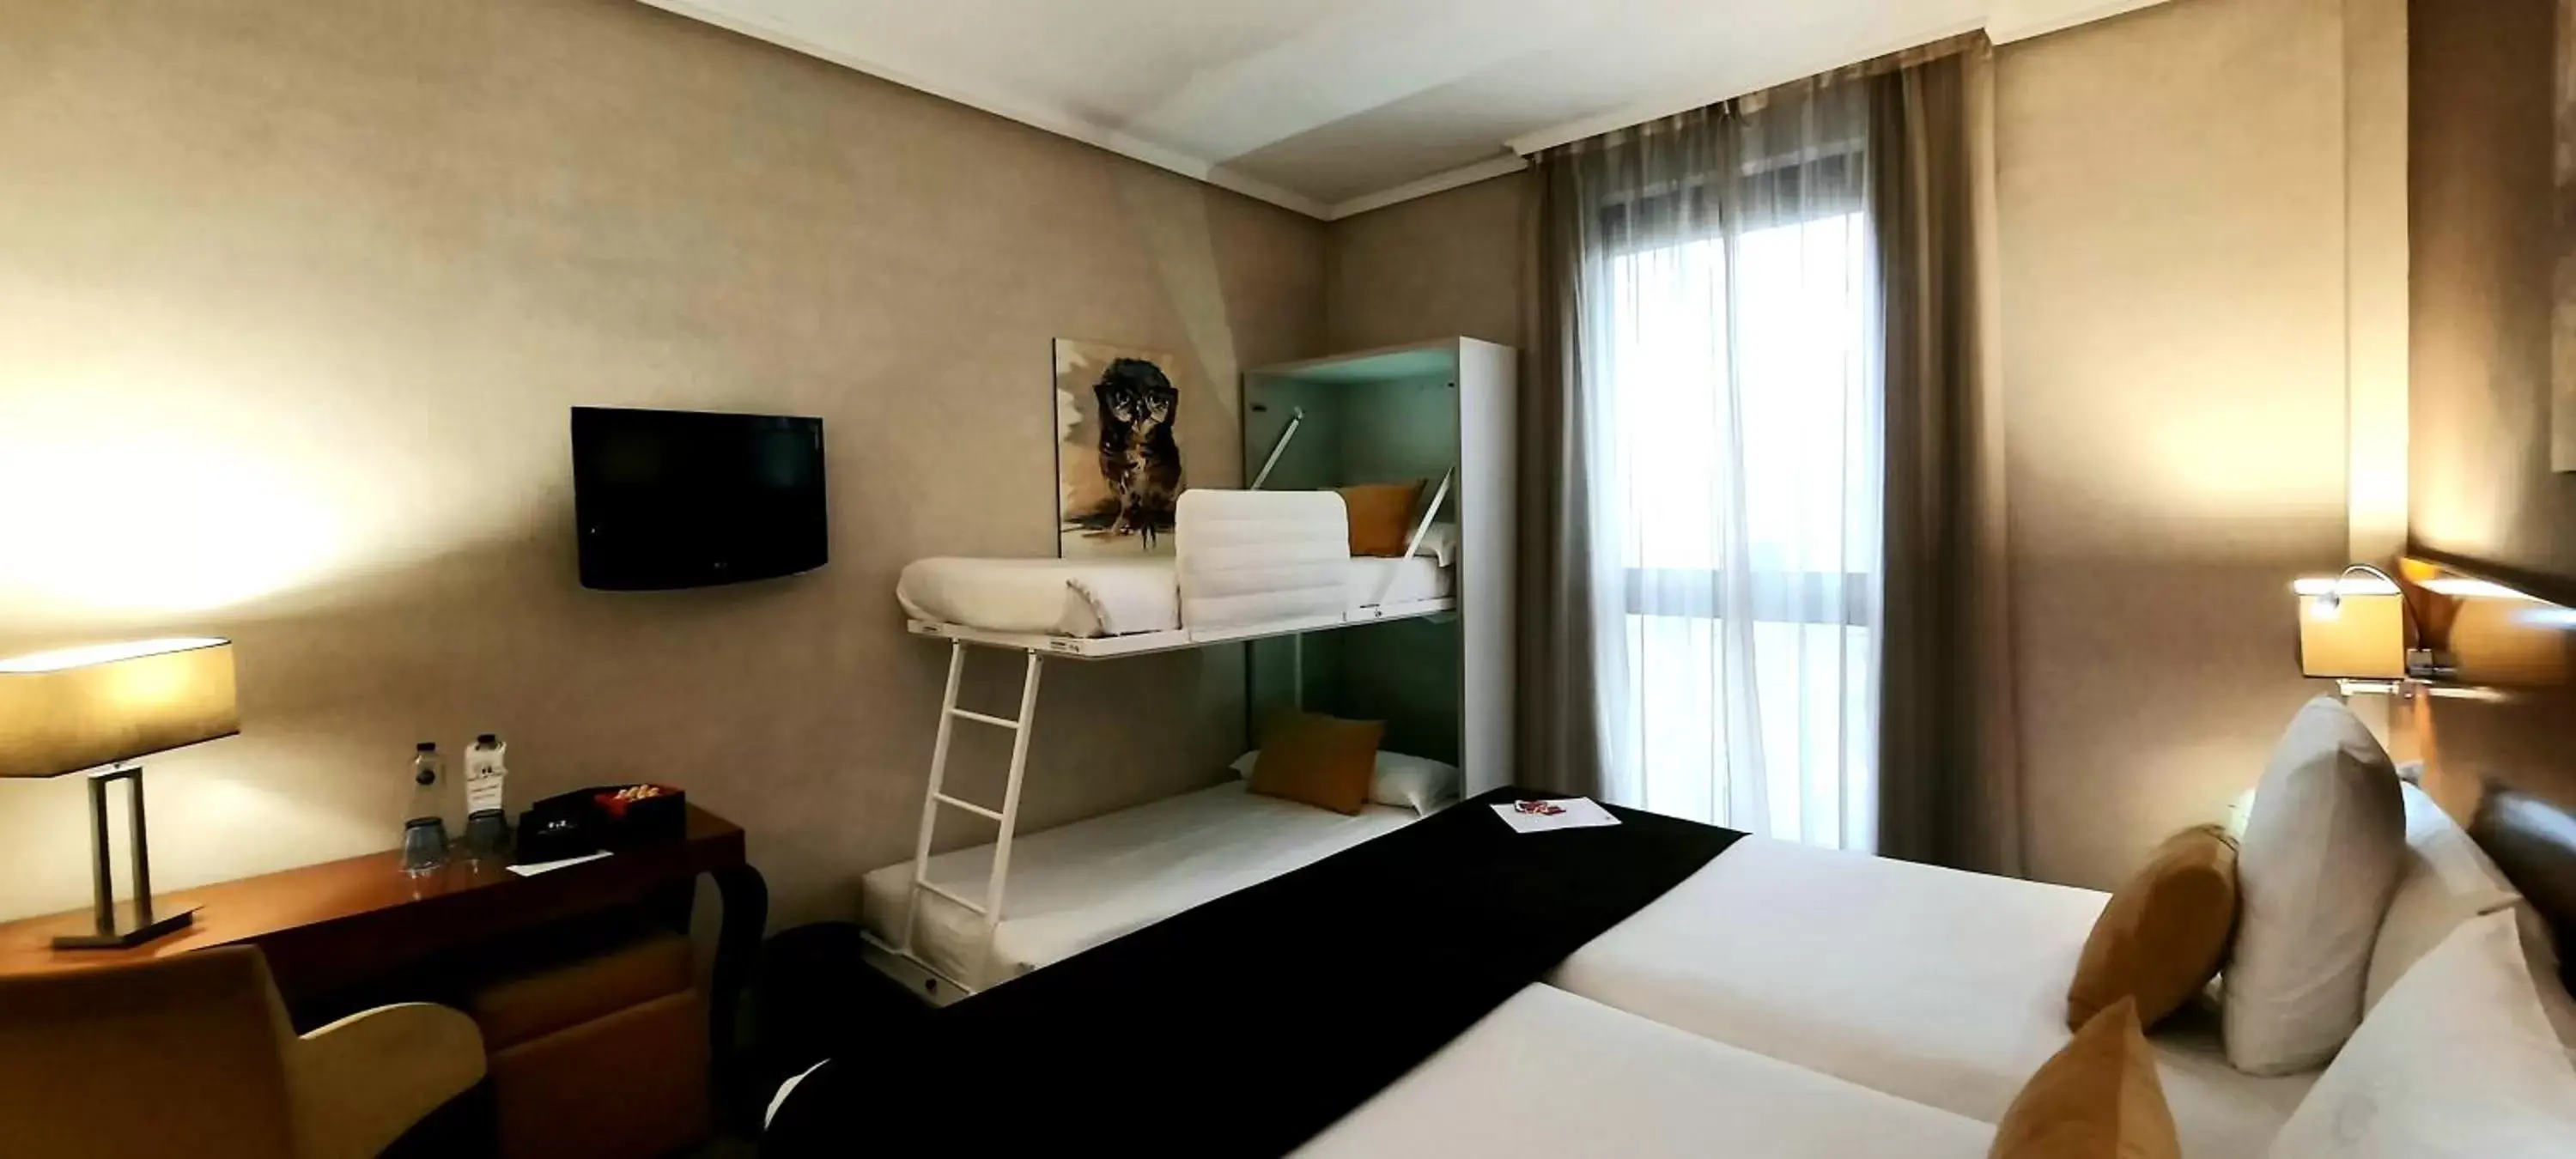 Bedroom, TV/Entertainment Center in Hotel Puerta de Toledo